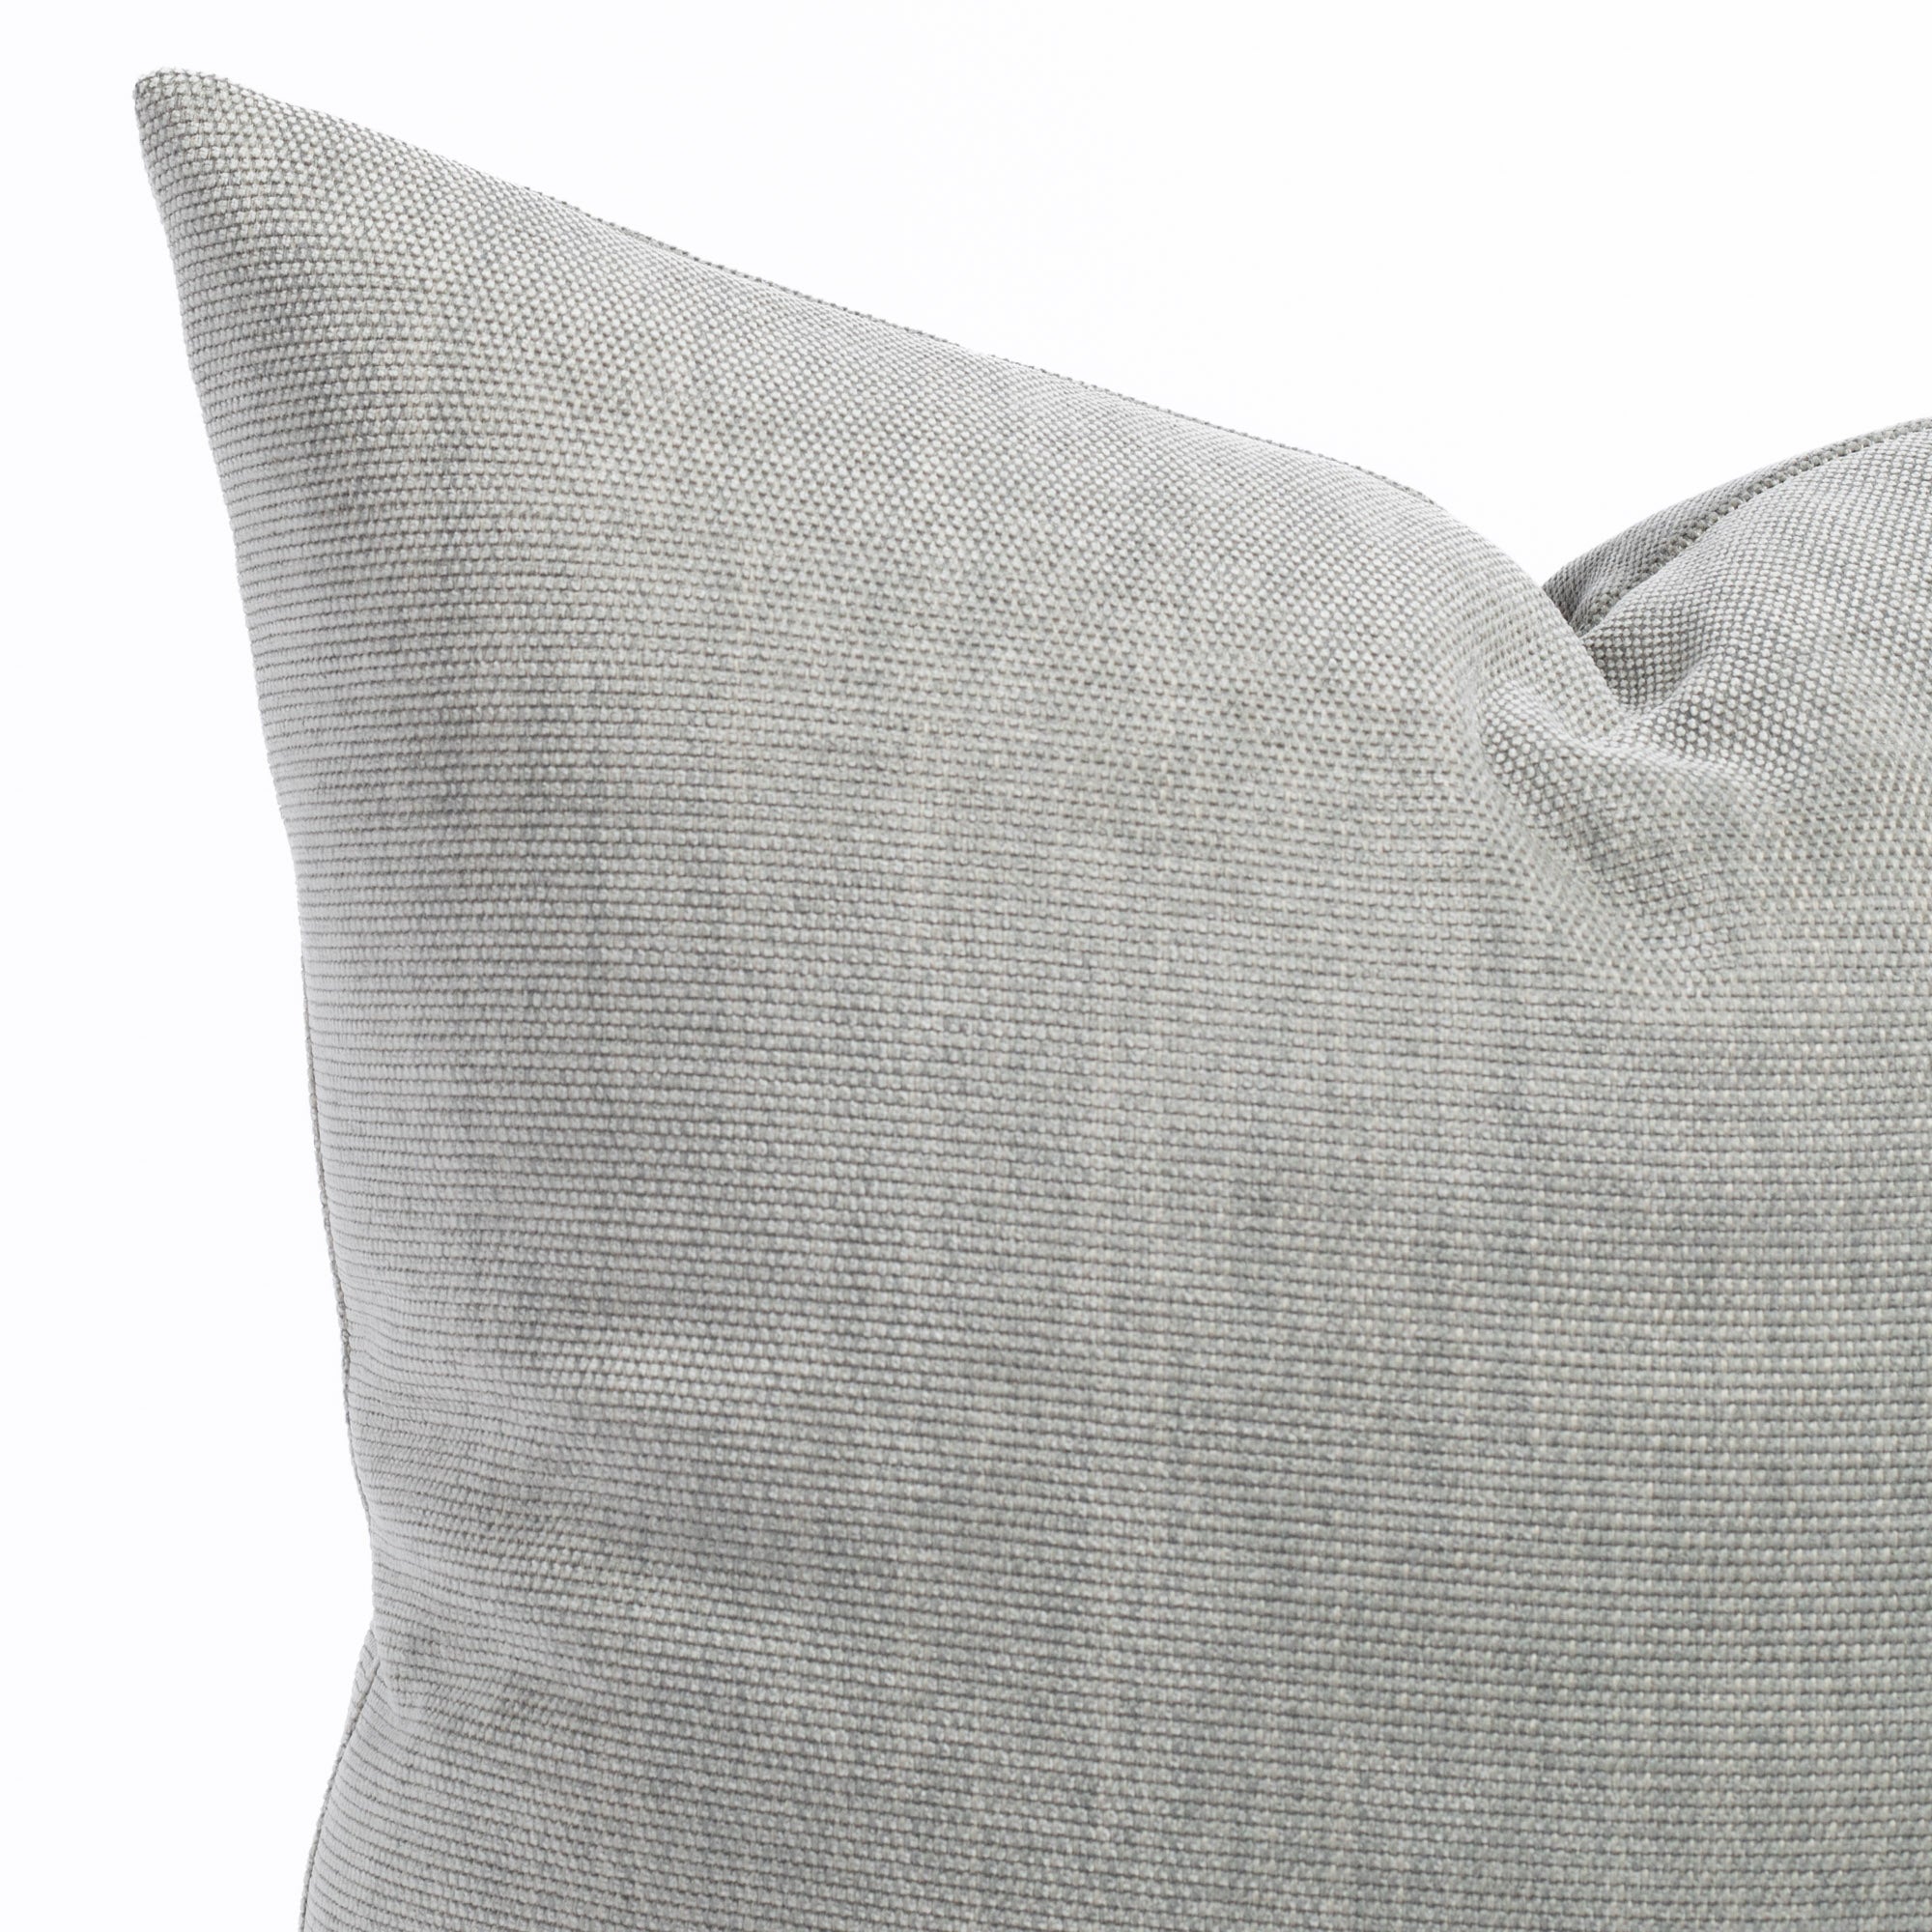 a soft light gray pillow : close up view 